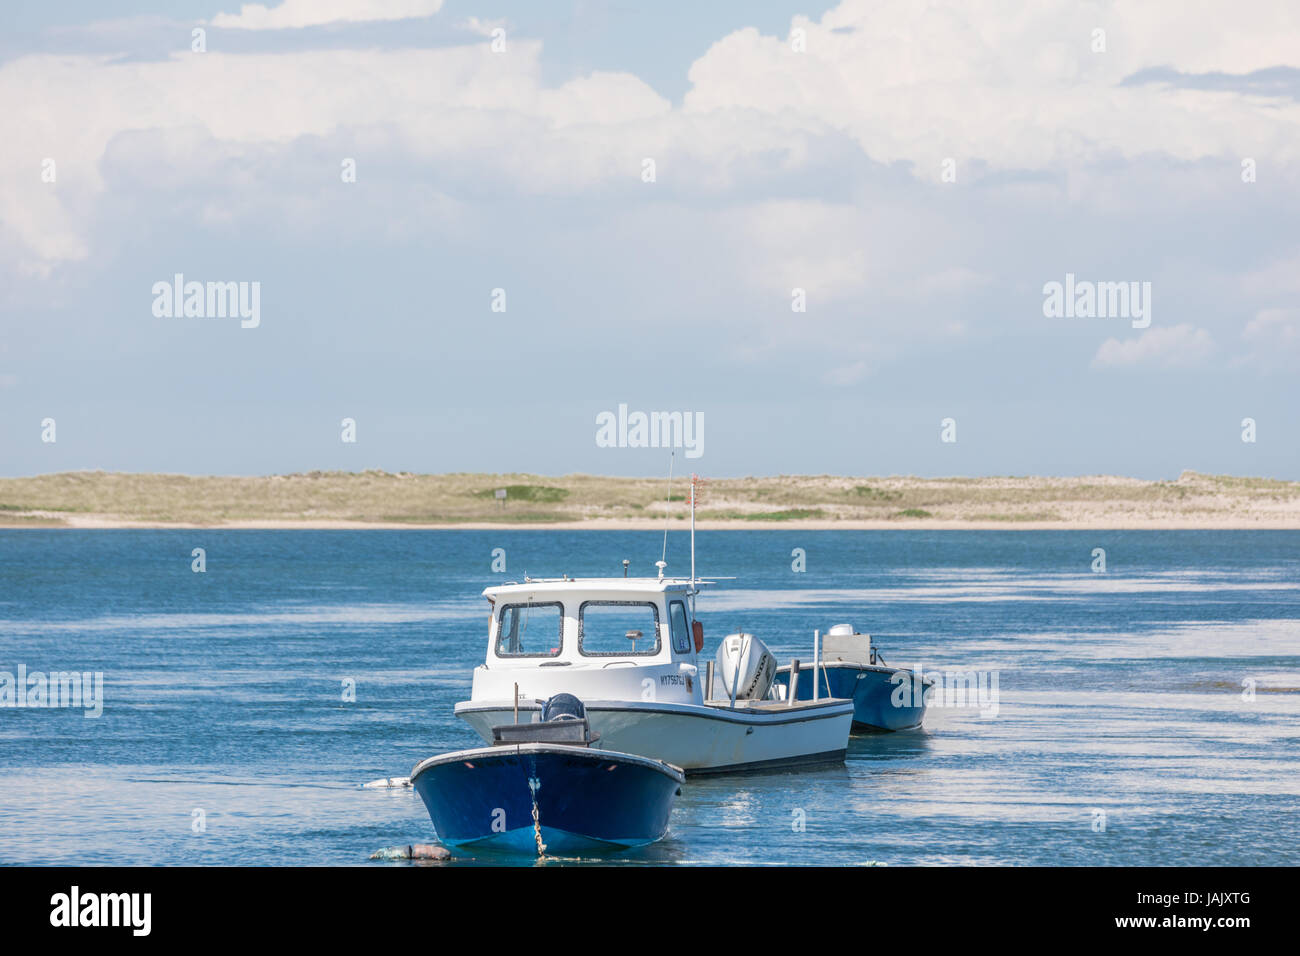 three boats at moorings off eastern long island, ny Stock Photo